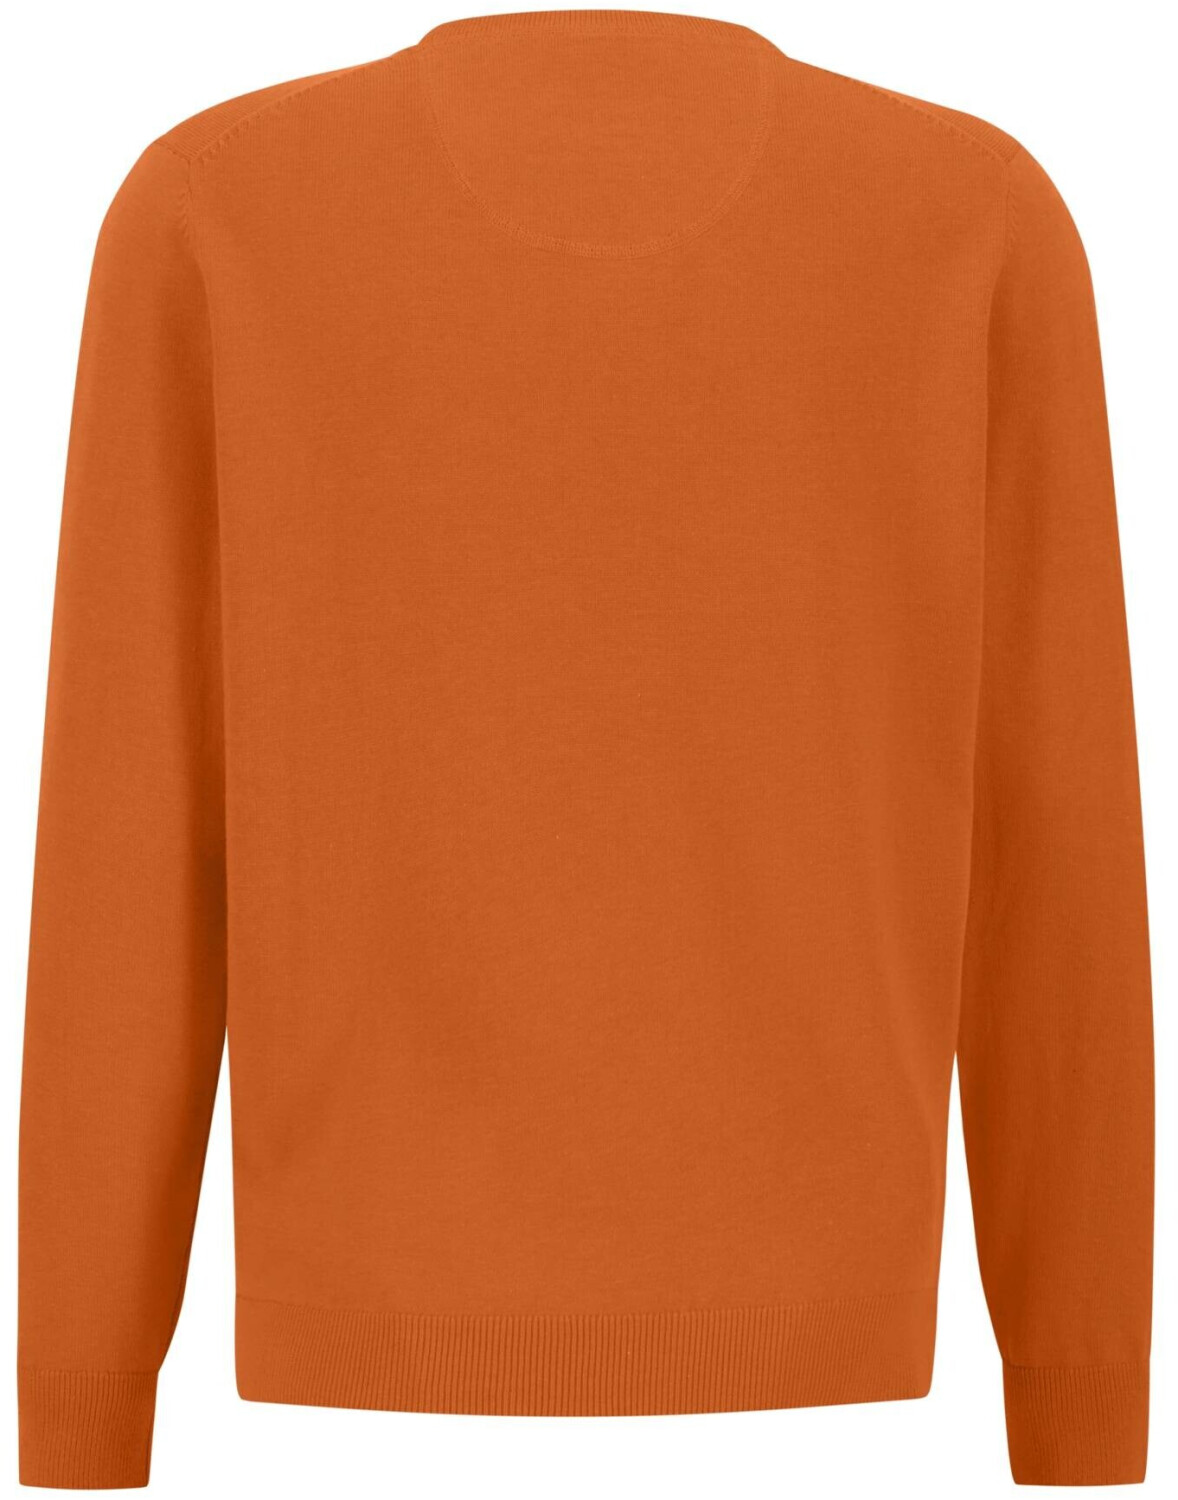 46,10 ab orange | Preisvergleich bei burnt V-Neck € Fynch-Hatton (1314211-210)